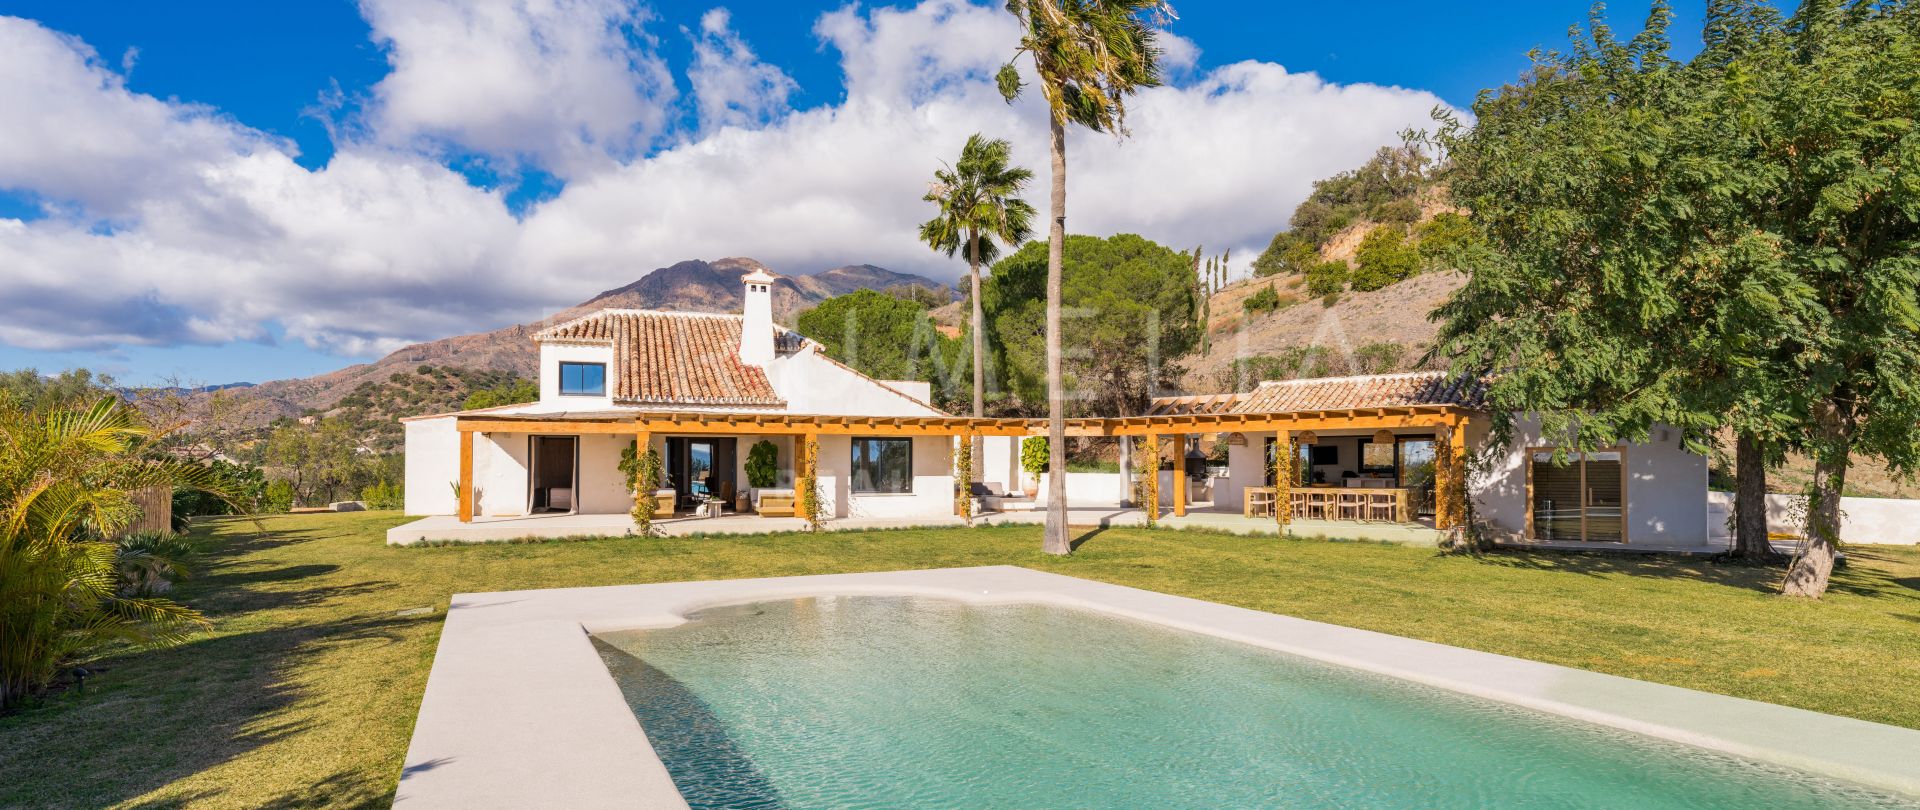 Villa en un entorno rural on vistas panorámicas al mar, Estepona